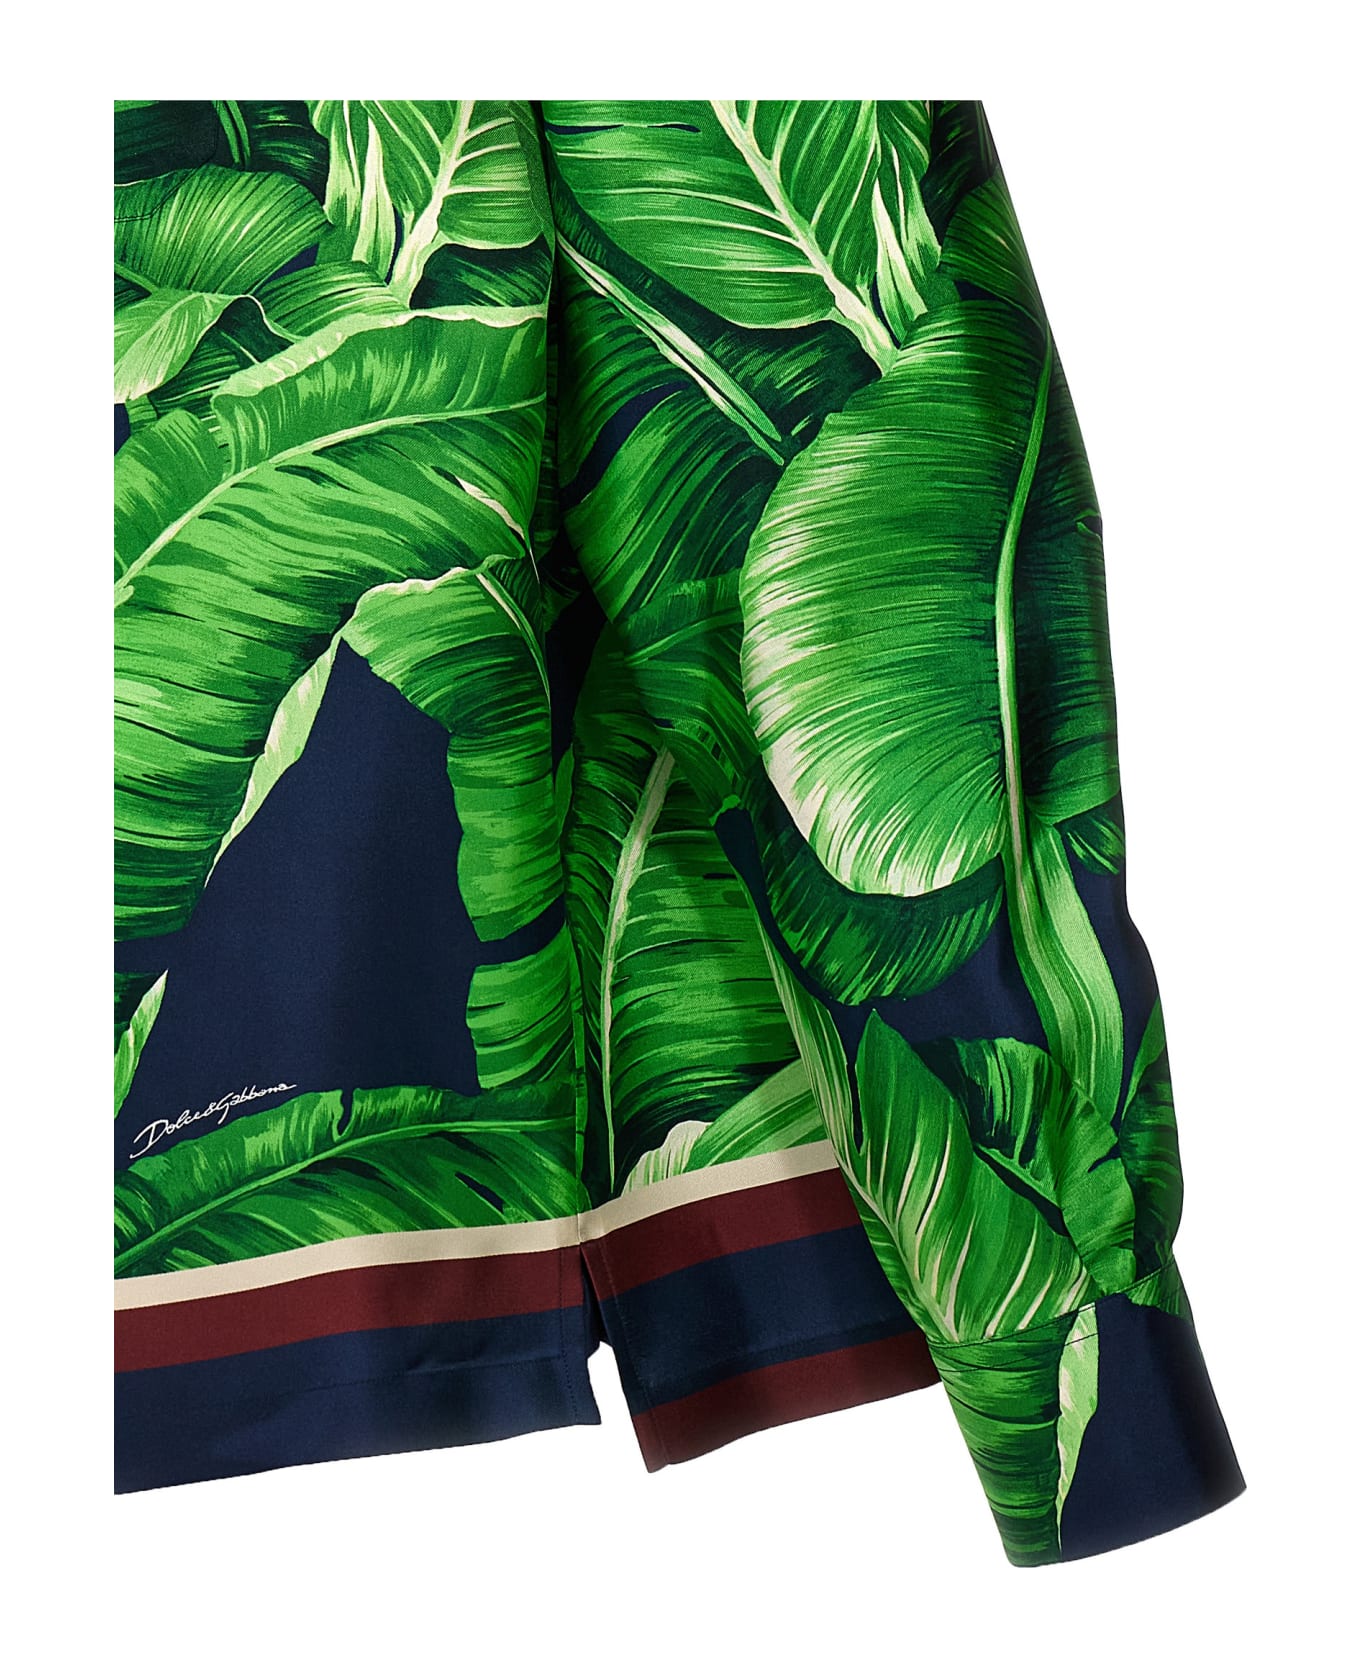 Dolce & Gabbana 'banano' Shirt - Green シャツ